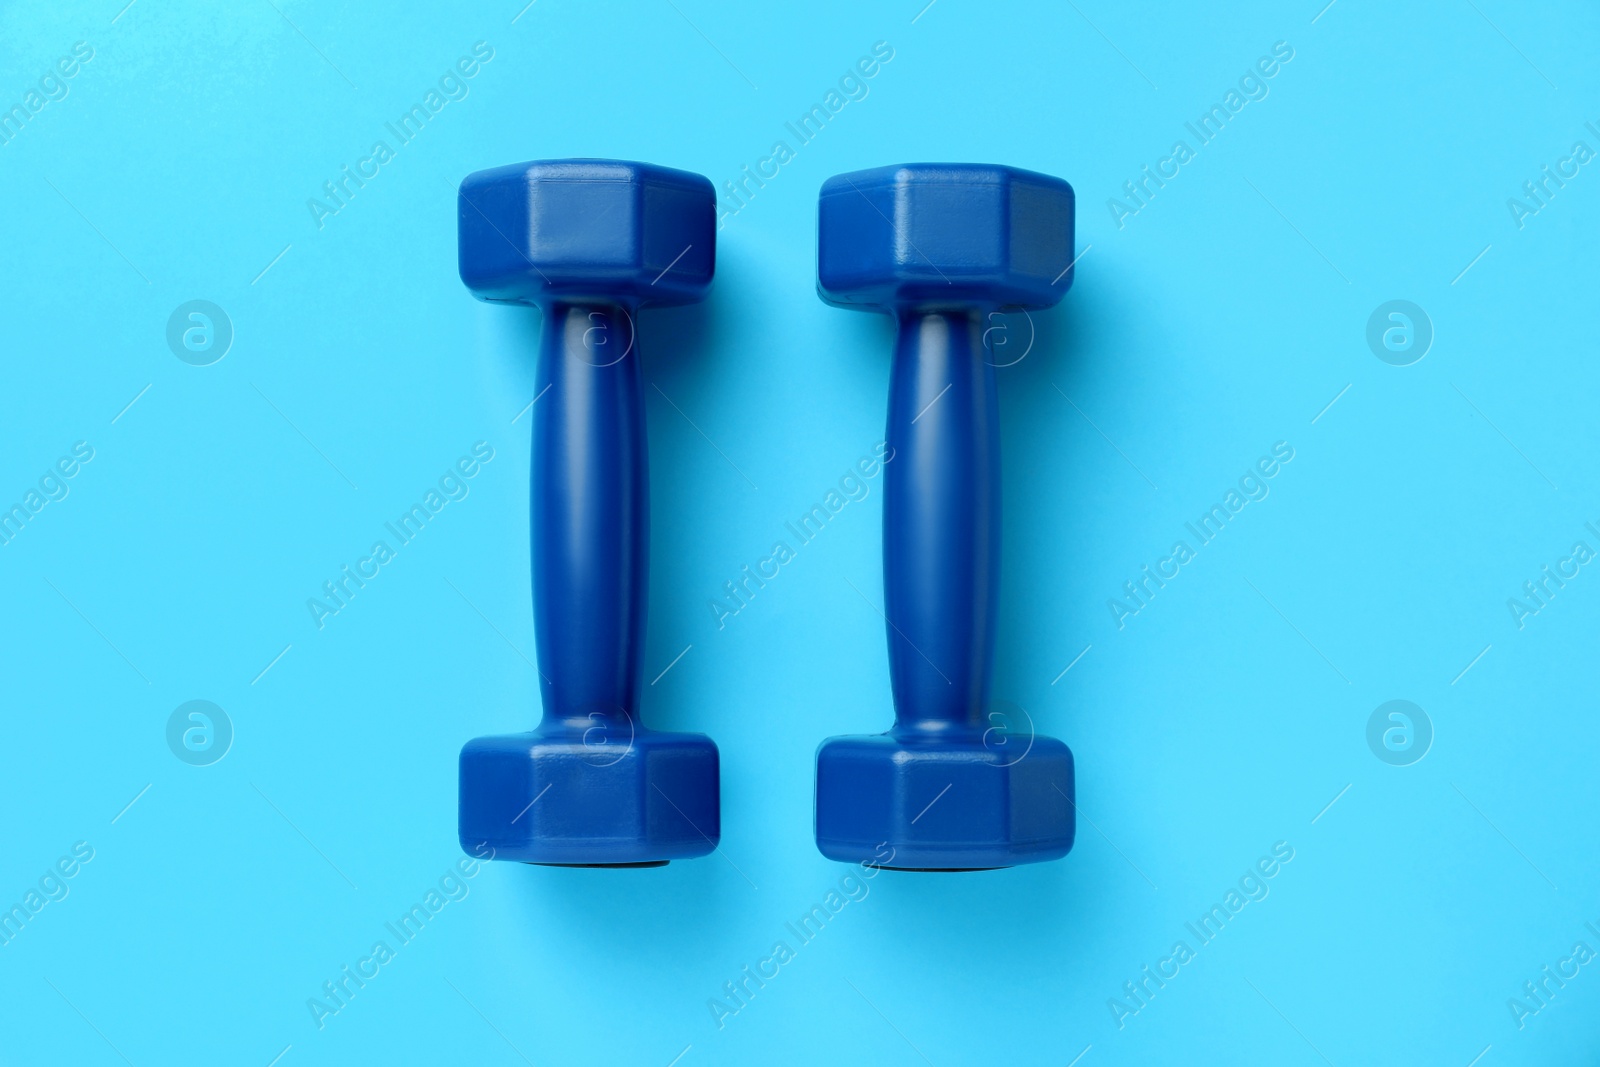 Photo of Stylish dumbbells on light blue background, flat lay